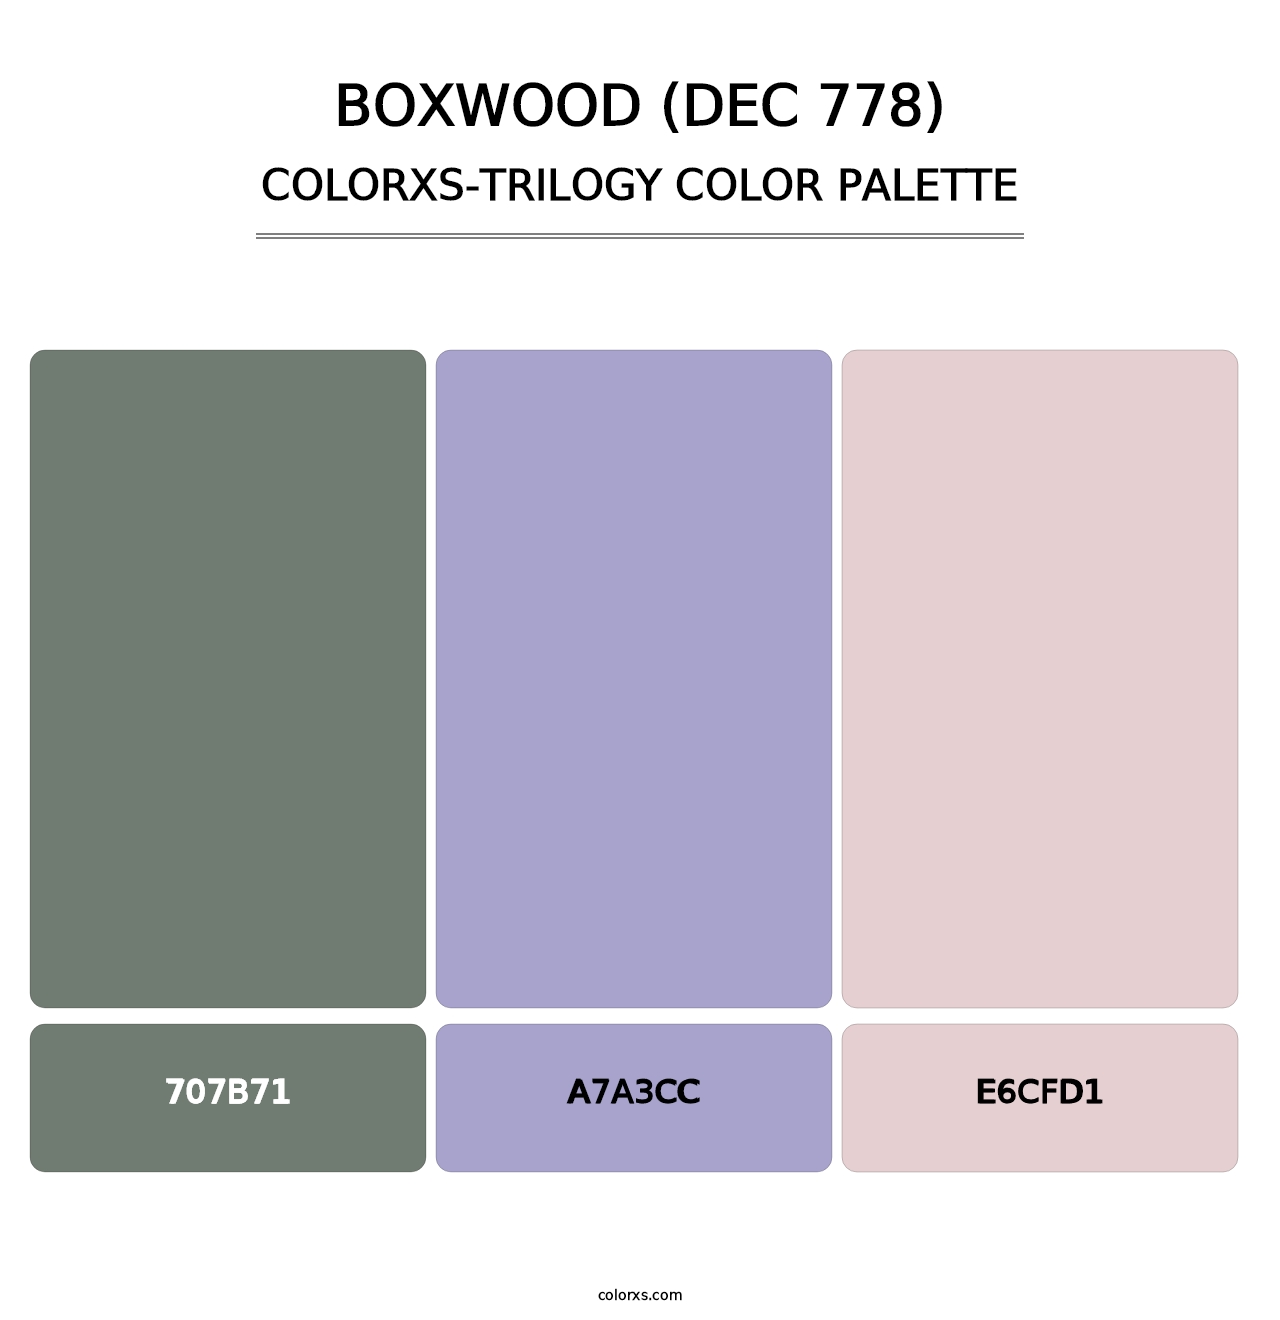 Boxwood (DEC 778) - Colorxs Trilogy Palette